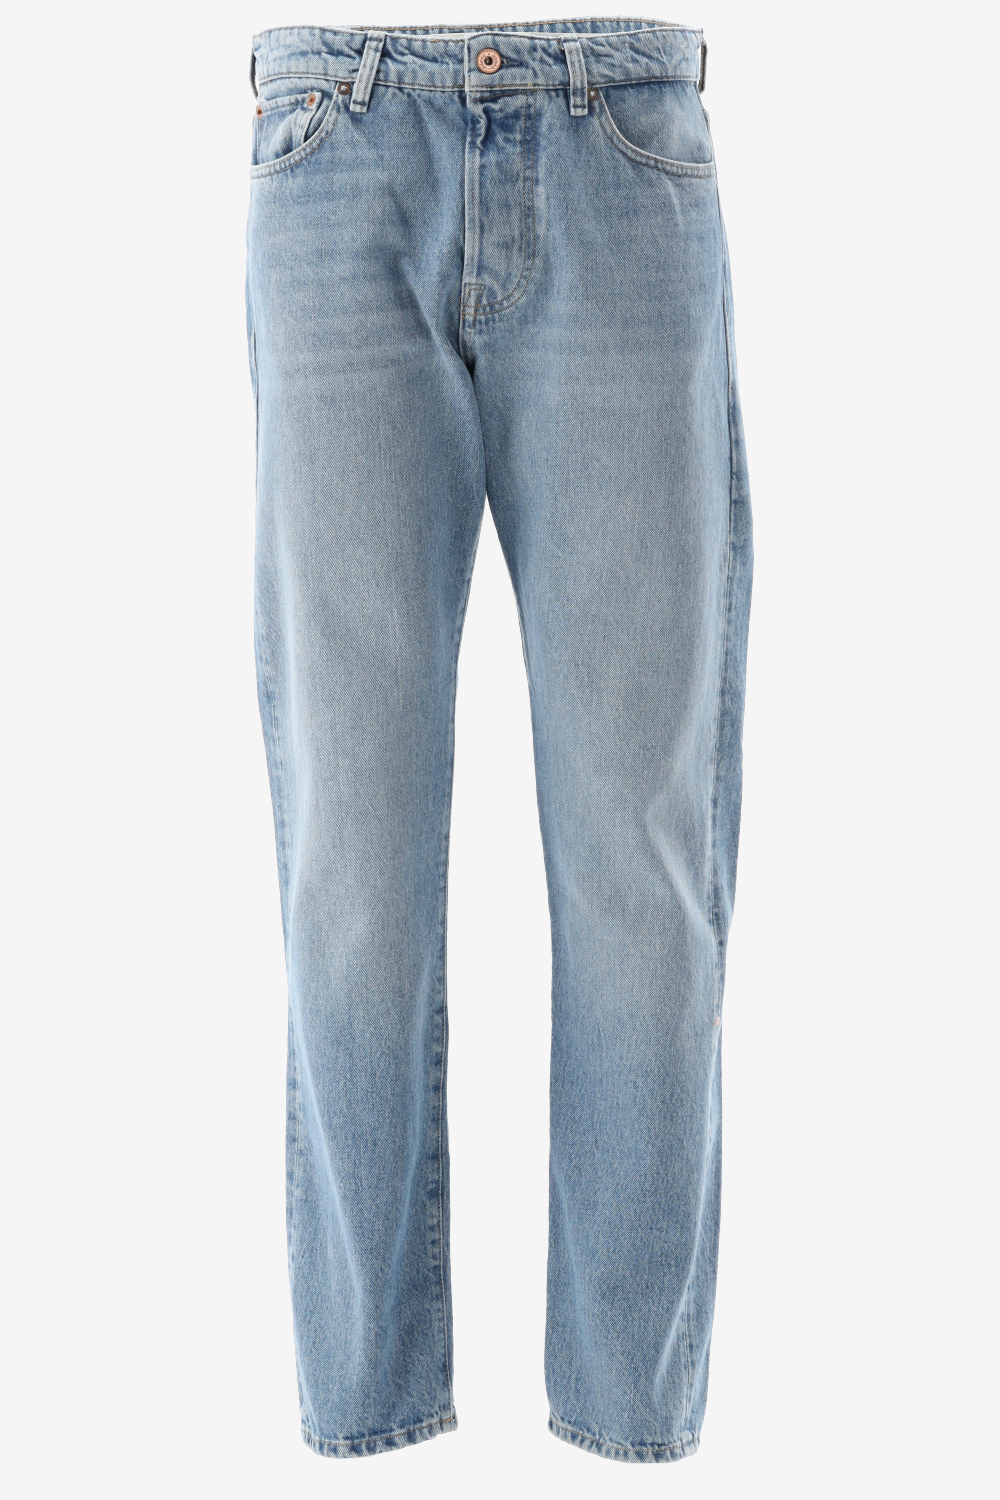 JACK & JONES Chris Cooper 890 Jeans - Heren - Blue - W34 X L34